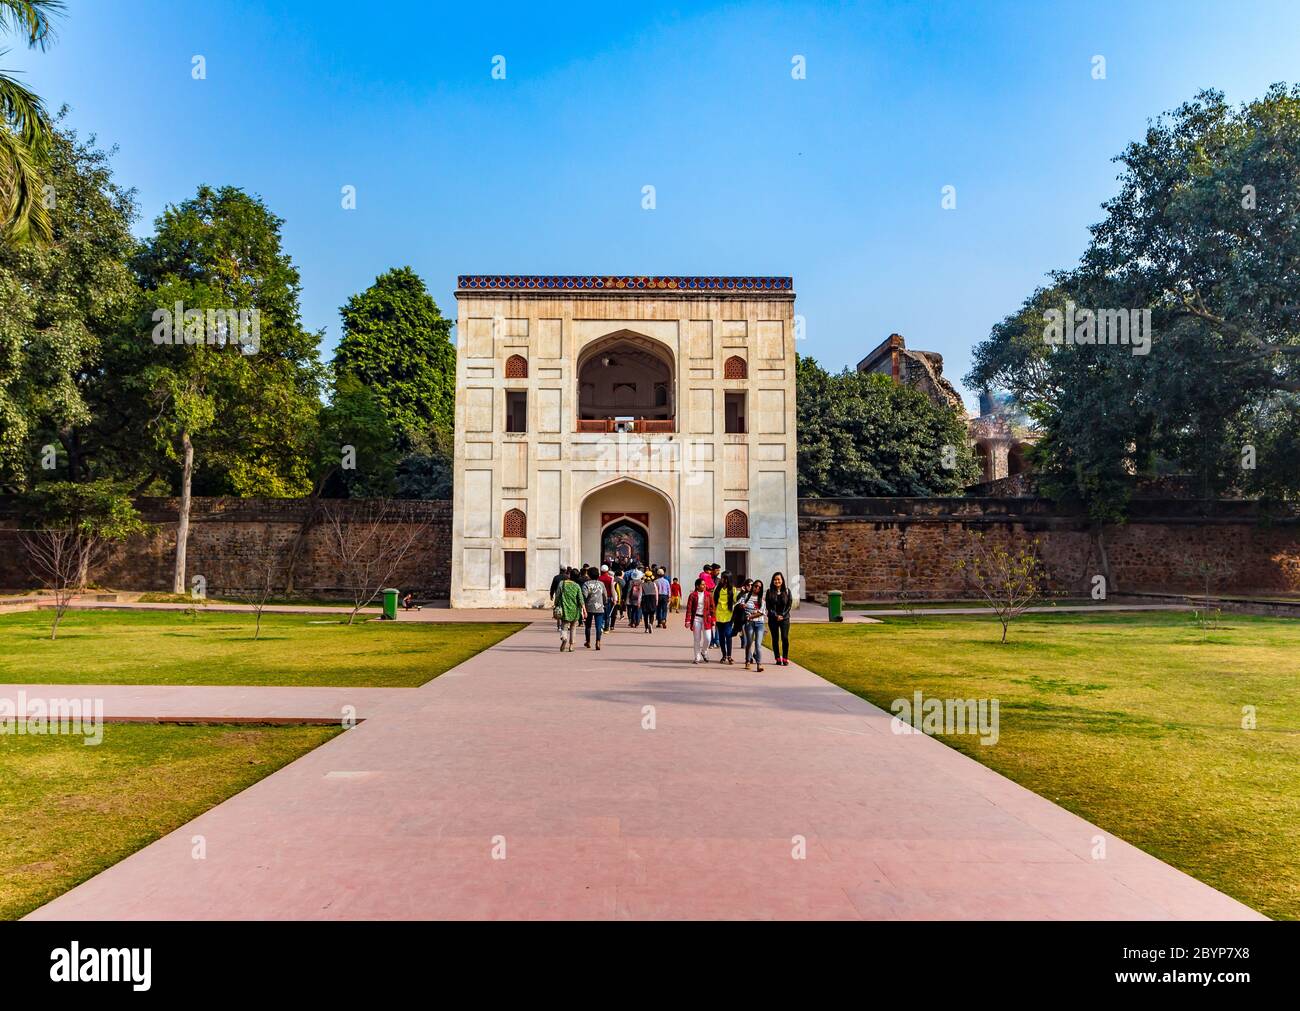 Vista reale del primo giardino-tomba nel subcontinente indiano. La Tomba è un ottimo esempio di architettura persiana. Situato nel Nizamuddin Foto Stock